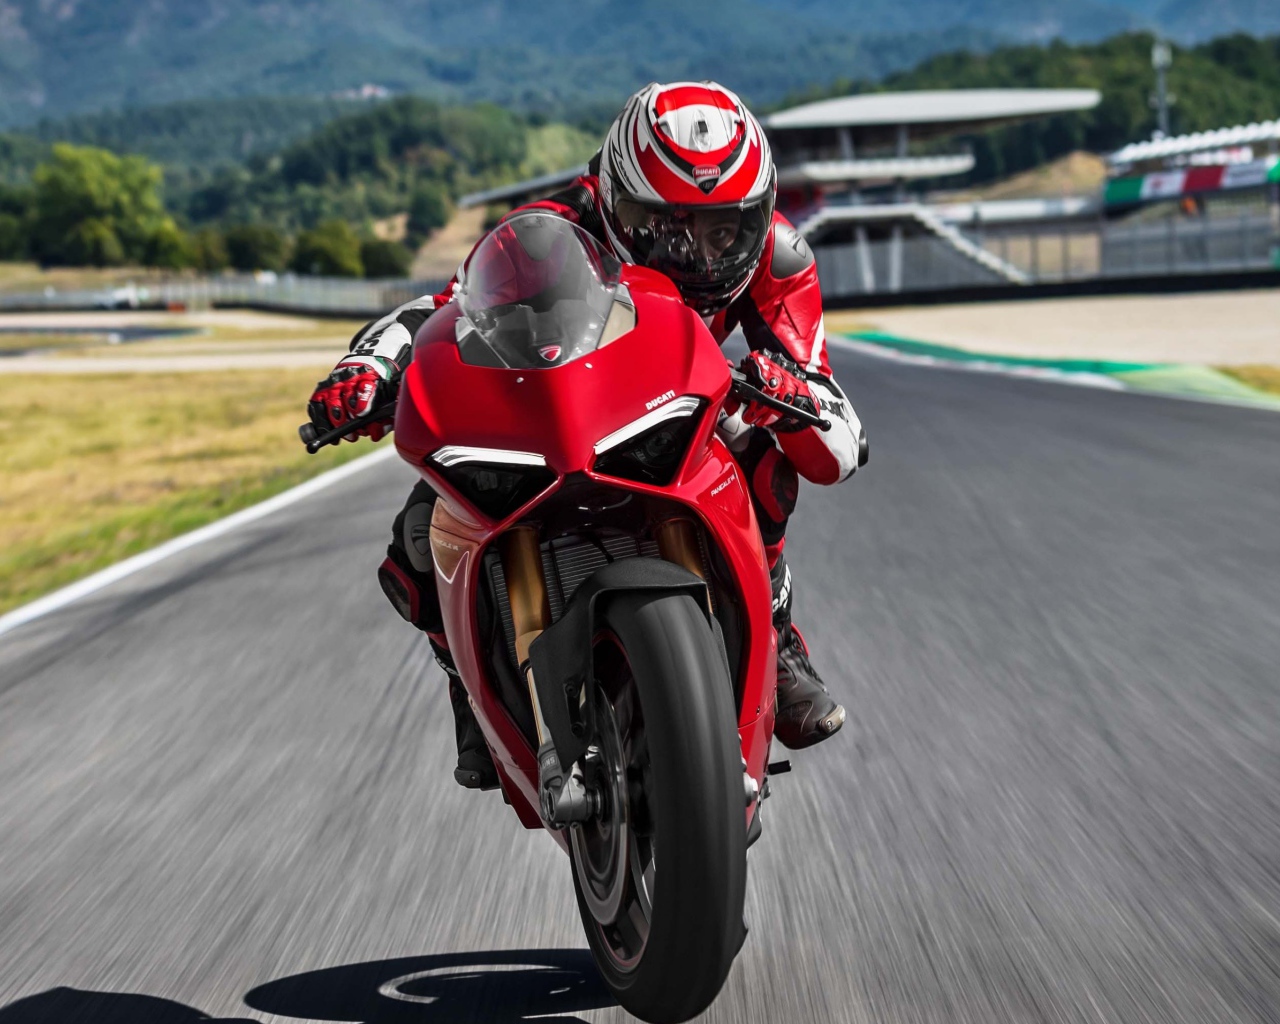 Красный мотоцикл  Ducati Panigale V4 S, 2018 на трассе с мотогонщиком